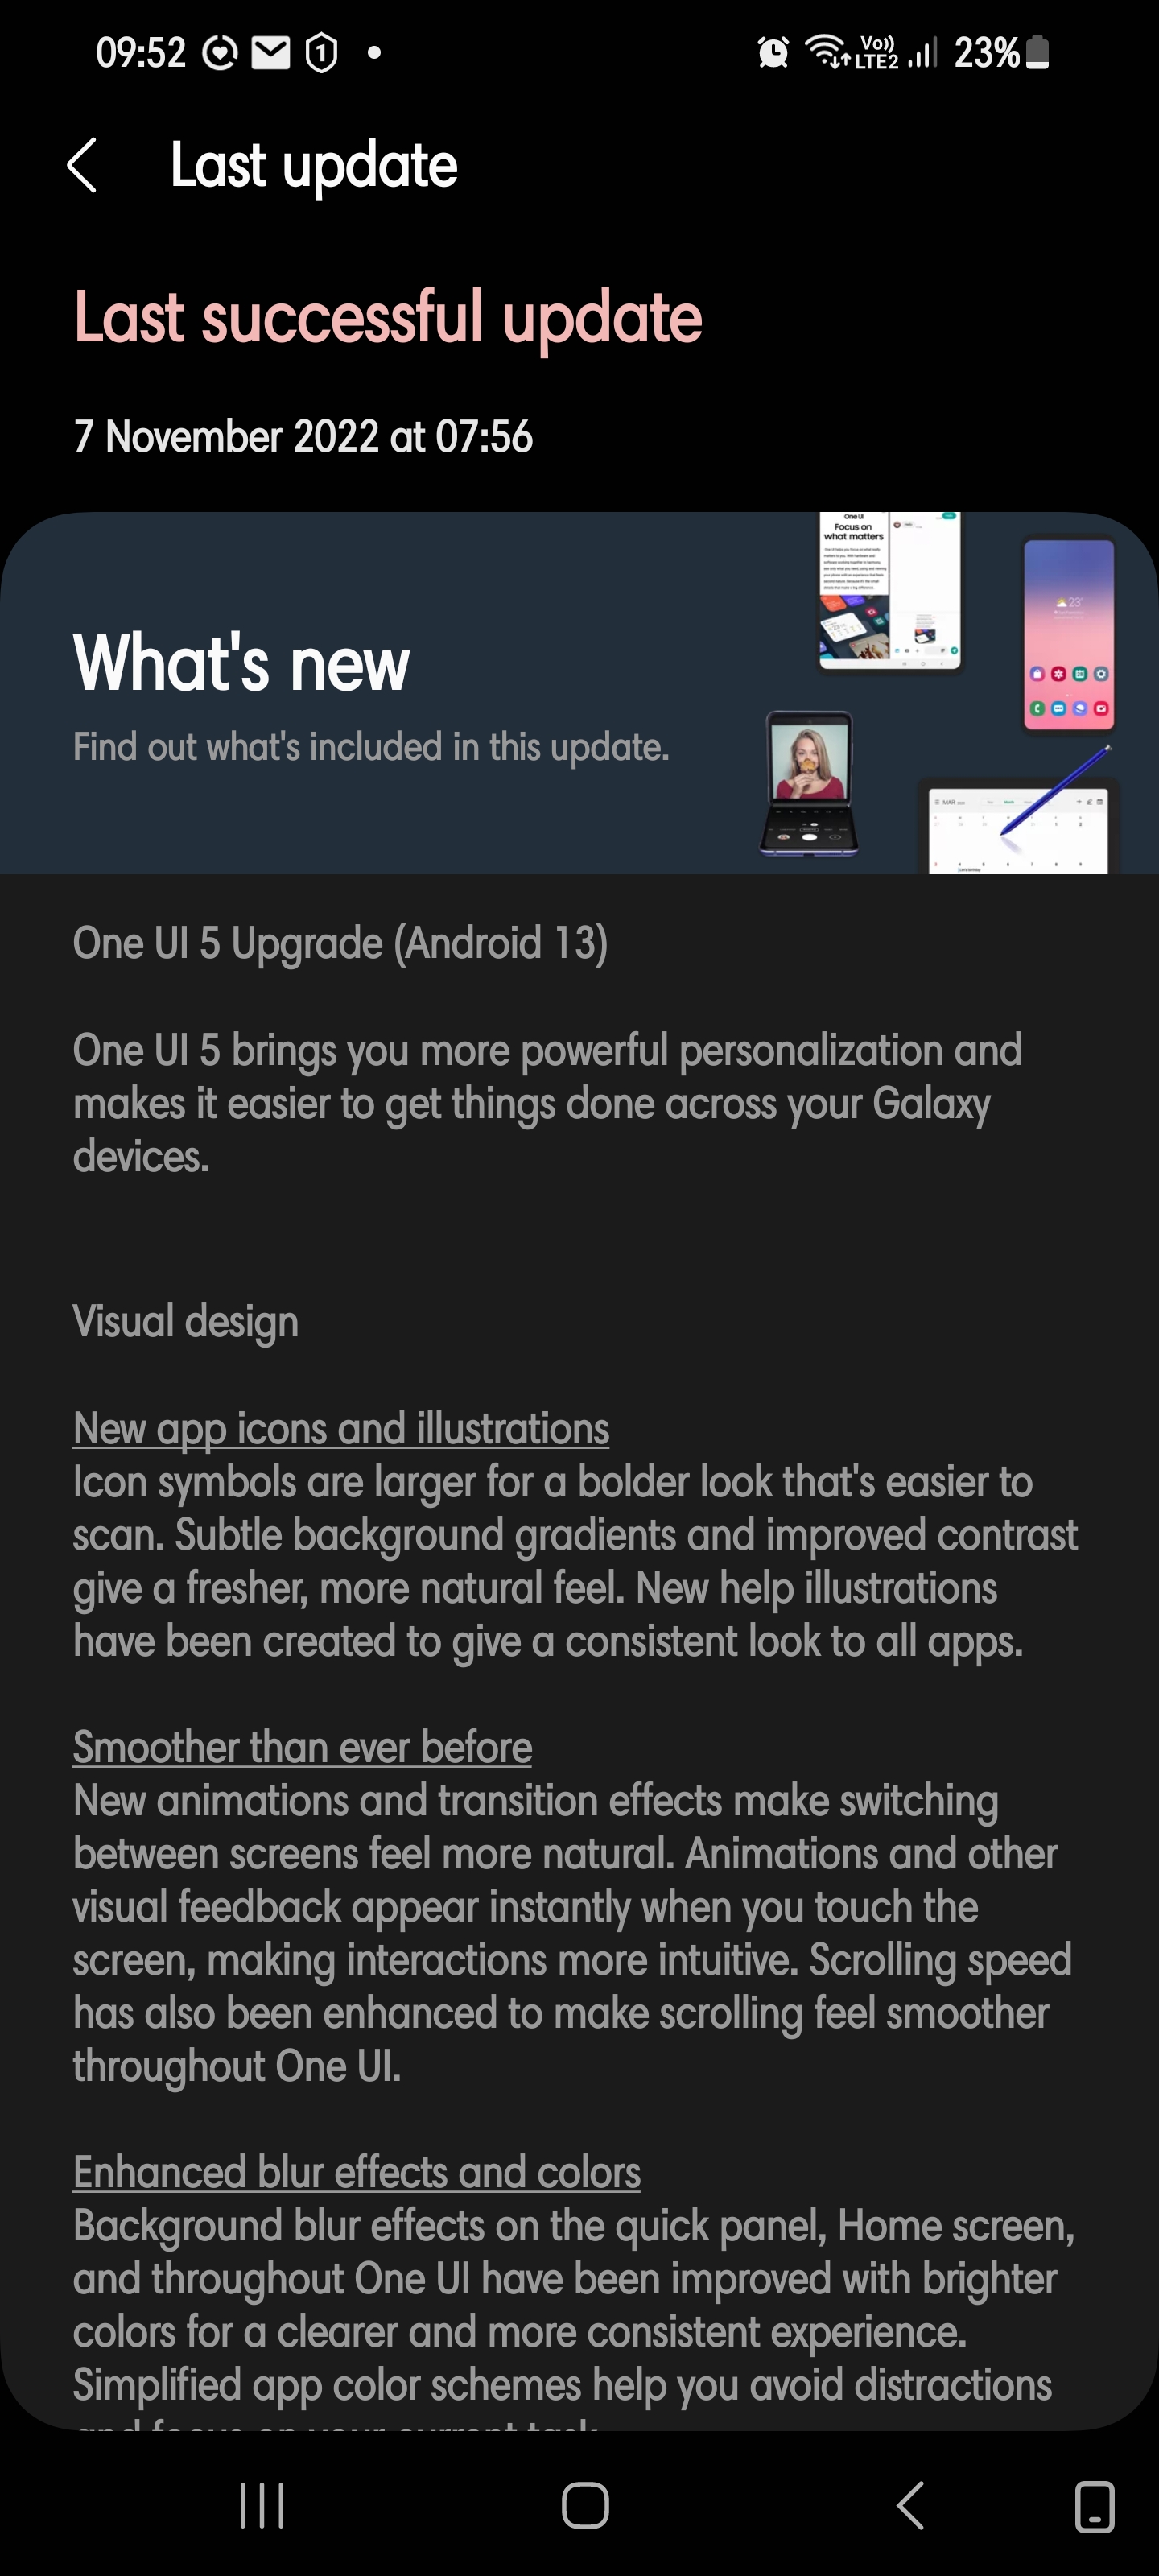 Nghe nói rằng Android 13 update sắp ra mắt và đây chắc chắn sẽ là phiên bản đáng mong đợi nhất từ trước đến nay. Hình ảnh liên quan sẽ khiến bạn nhìn thấy được những cải tiến và tính năng mới trong bản cập nhật này. Đừng bỏ qua cơ hội để cập nhật cho thiết bị của bạn!